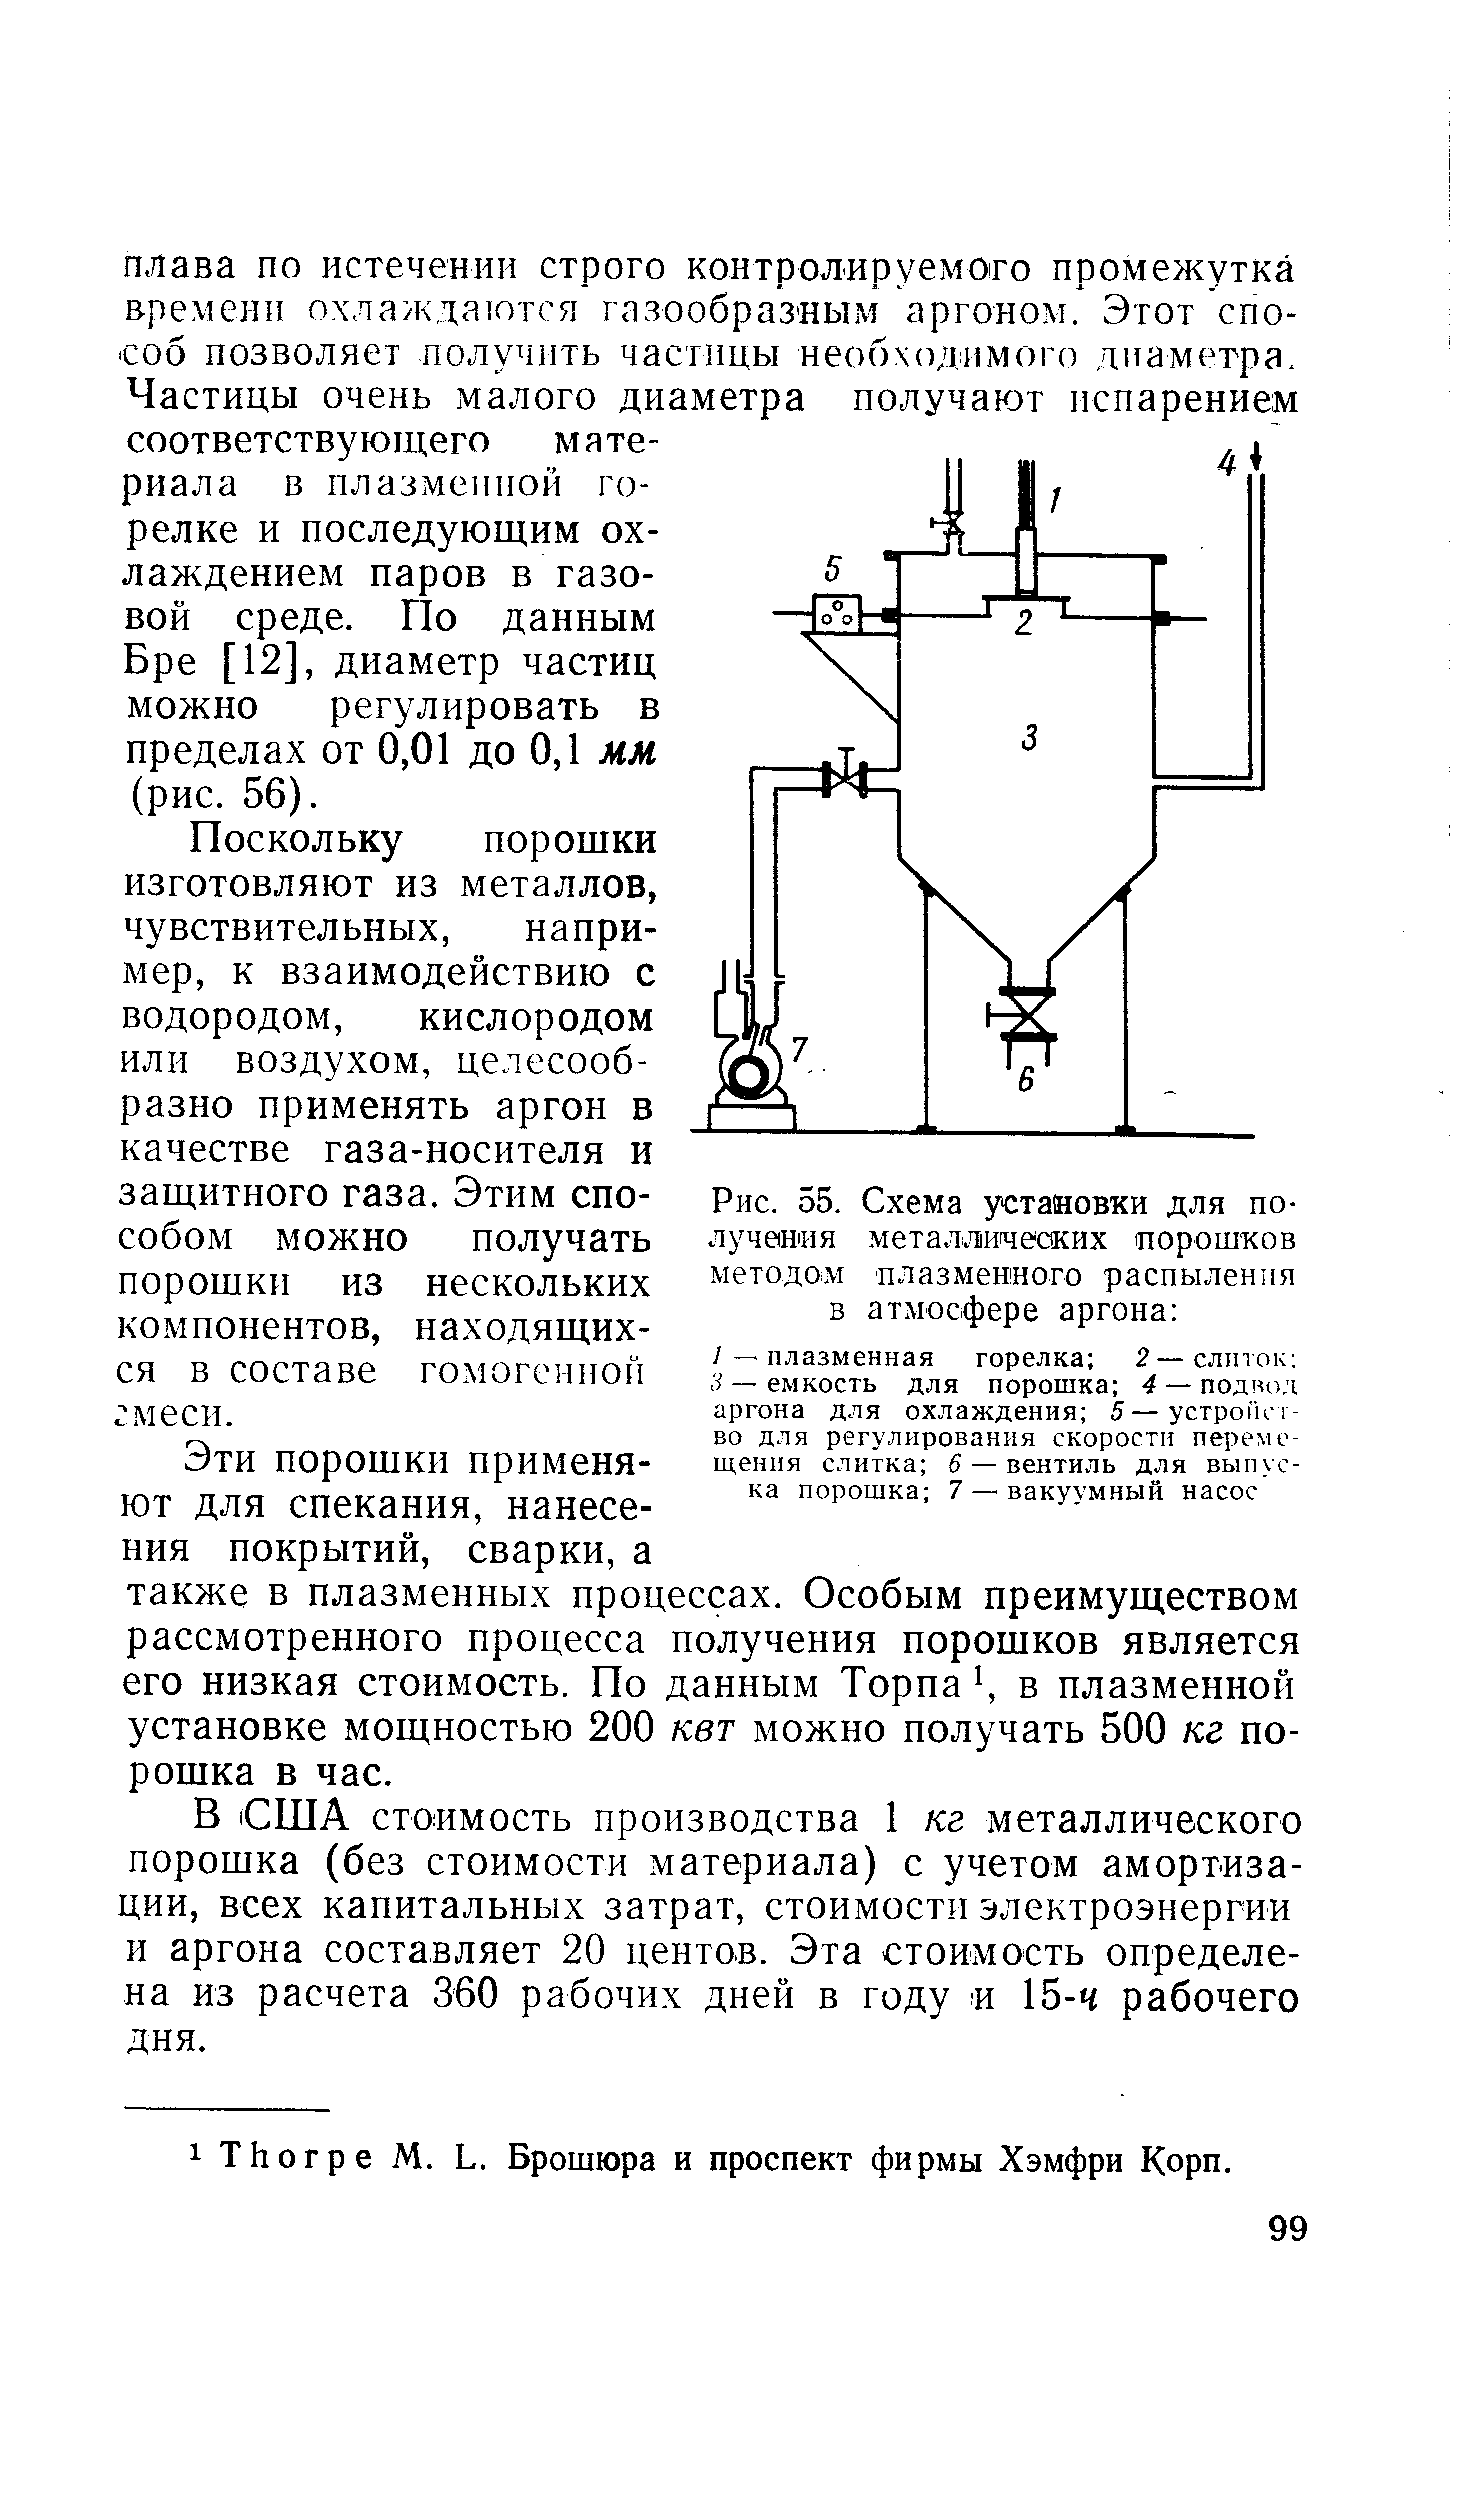 Рис. 55. Схема установки для <a href="/info/199302">получения металлических</a> порошков методом плазменного распыления в атлюсфере аргона 
